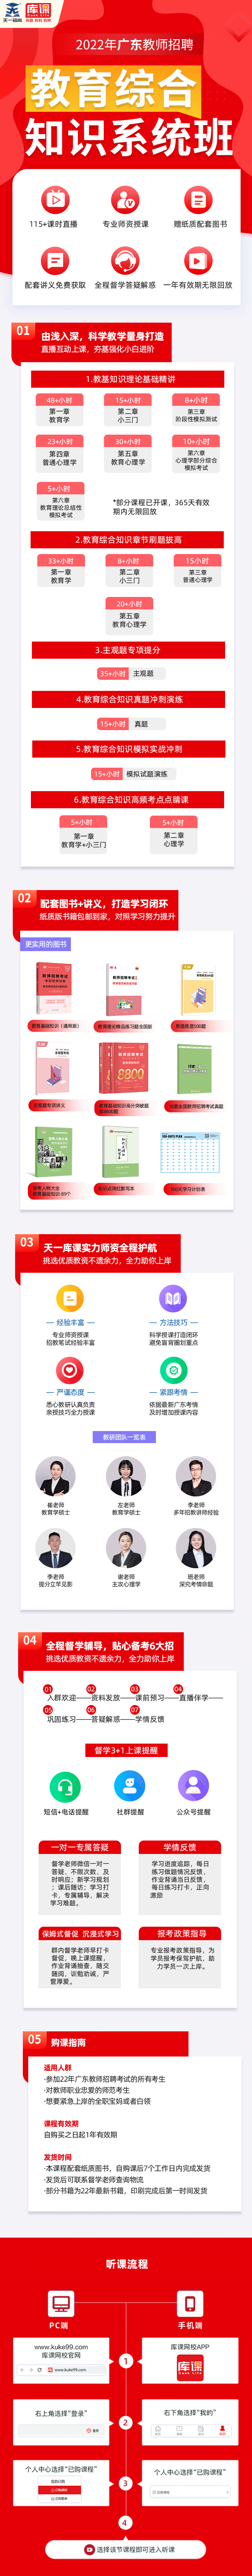 各省份教综系统班详情页-广东.png